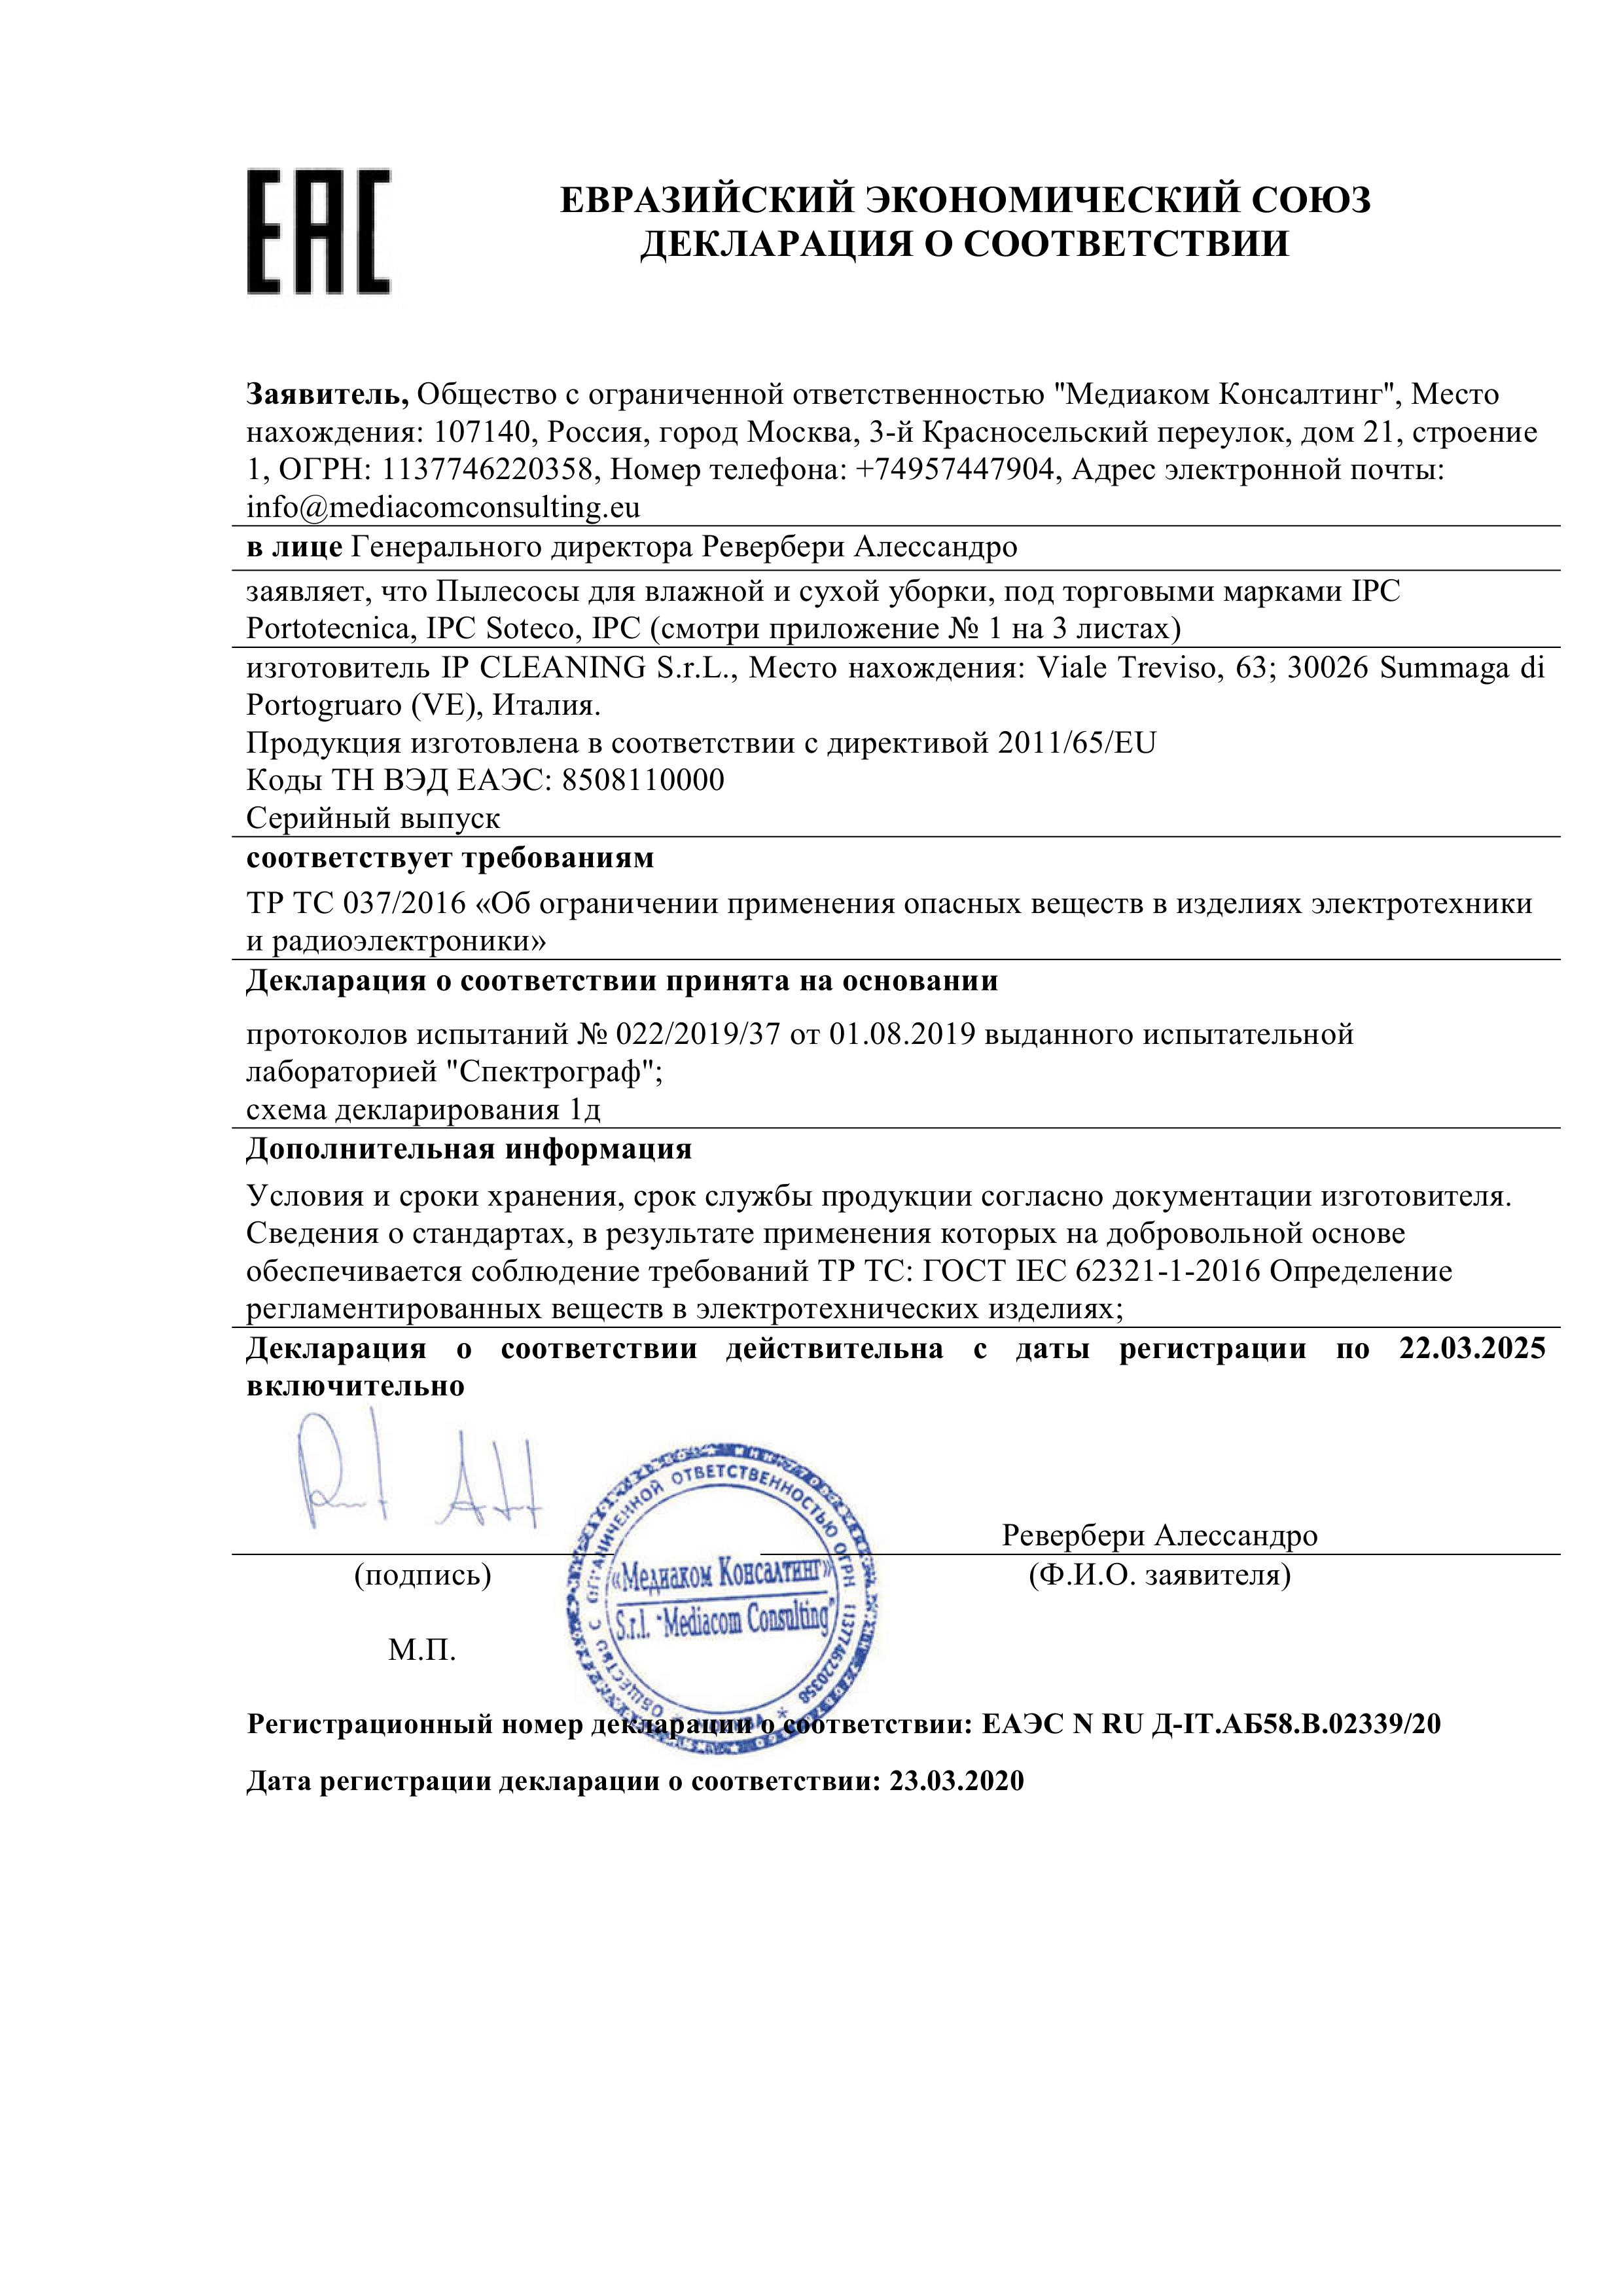 Евразийский экономический союз декларация о соответствии IPC Portotecnika, IPC Soteco